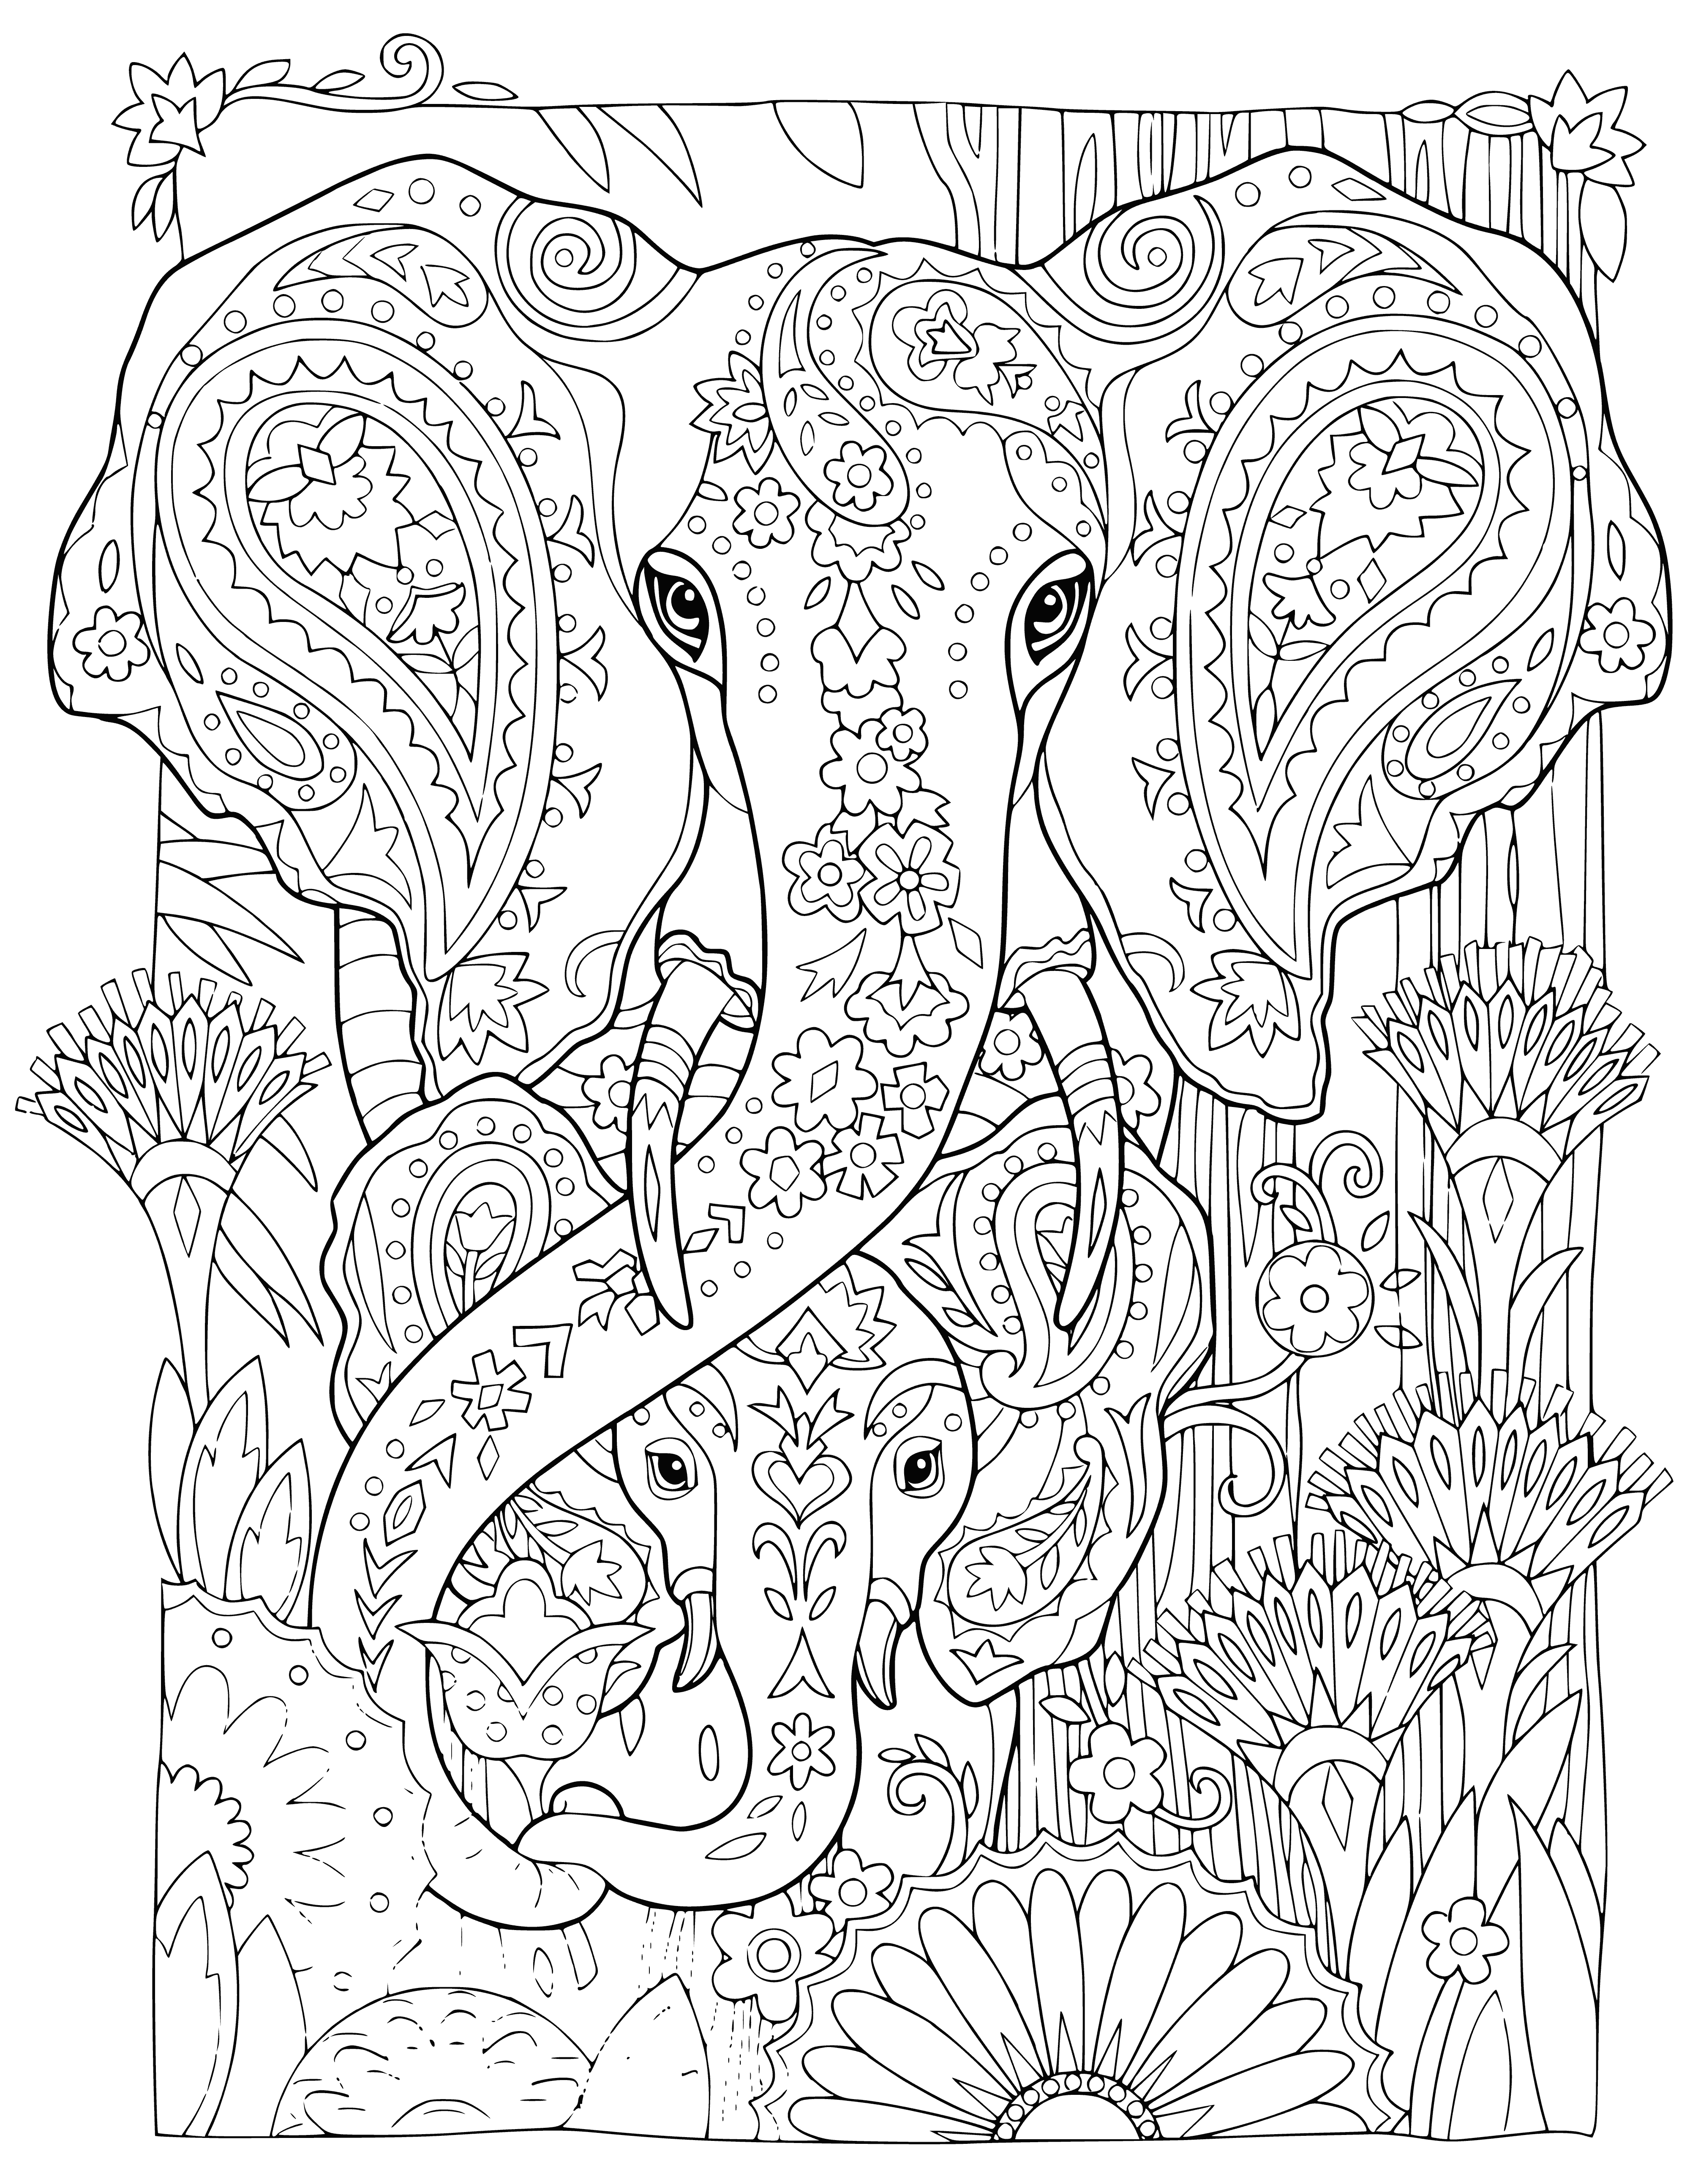 Słoń i mały słoń kolorowanka